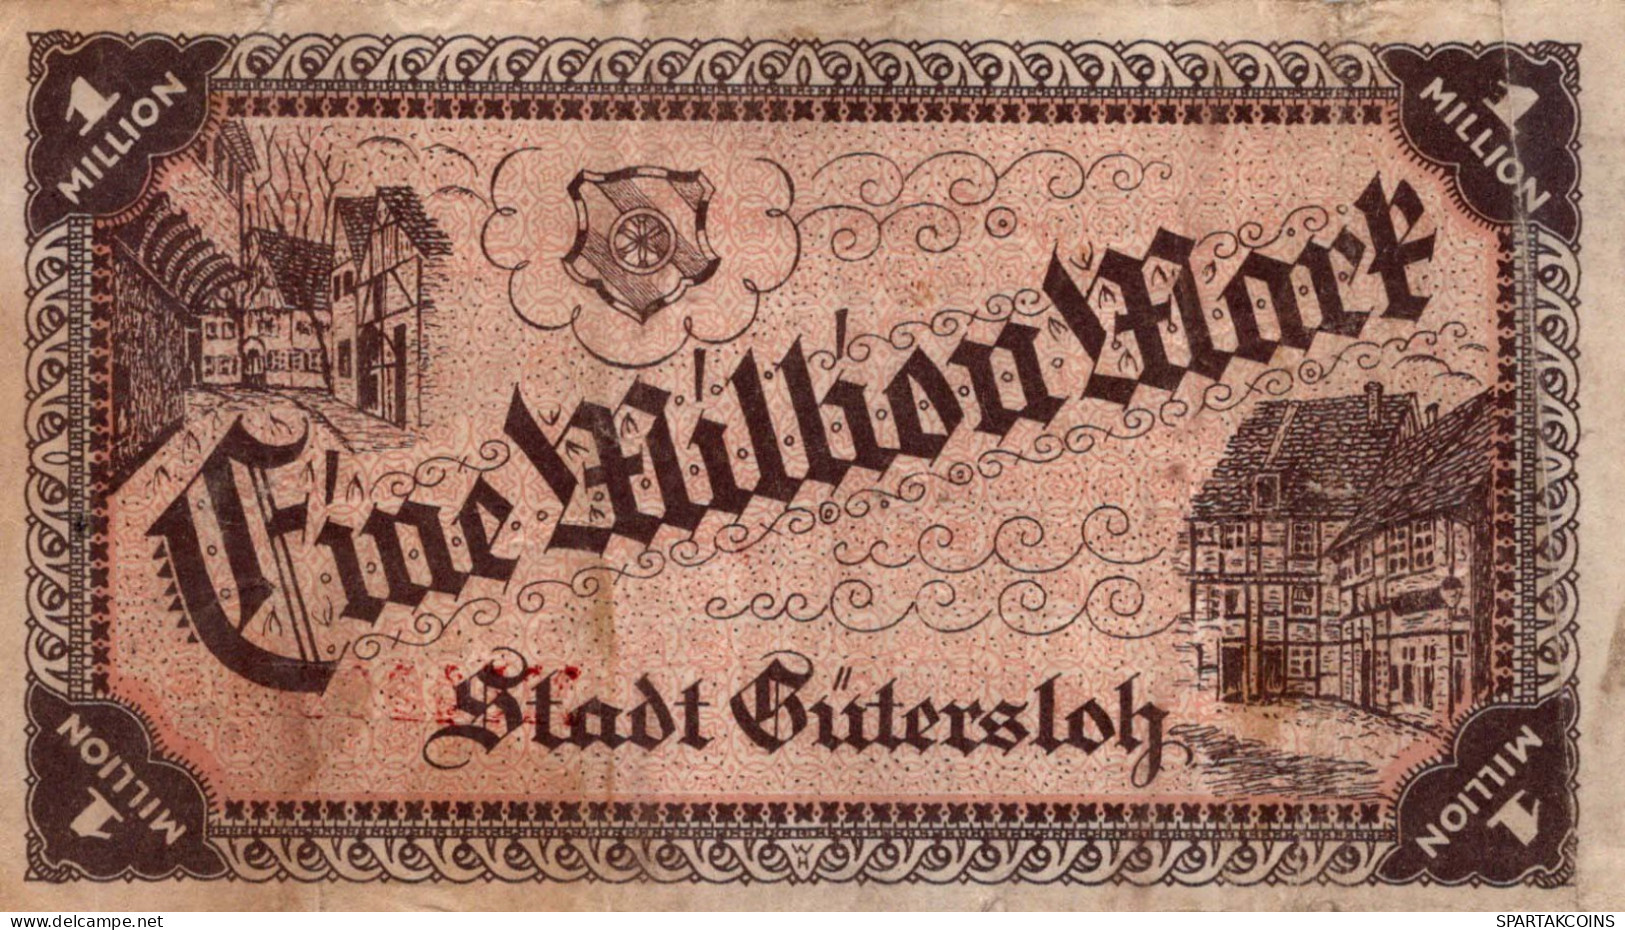 1 MILLION MARK 1923 Stadt Gütersloh Westphalia DEUTSCHLAND Papiergeld Banknote #PK868 - [11] Local Banknote Issues